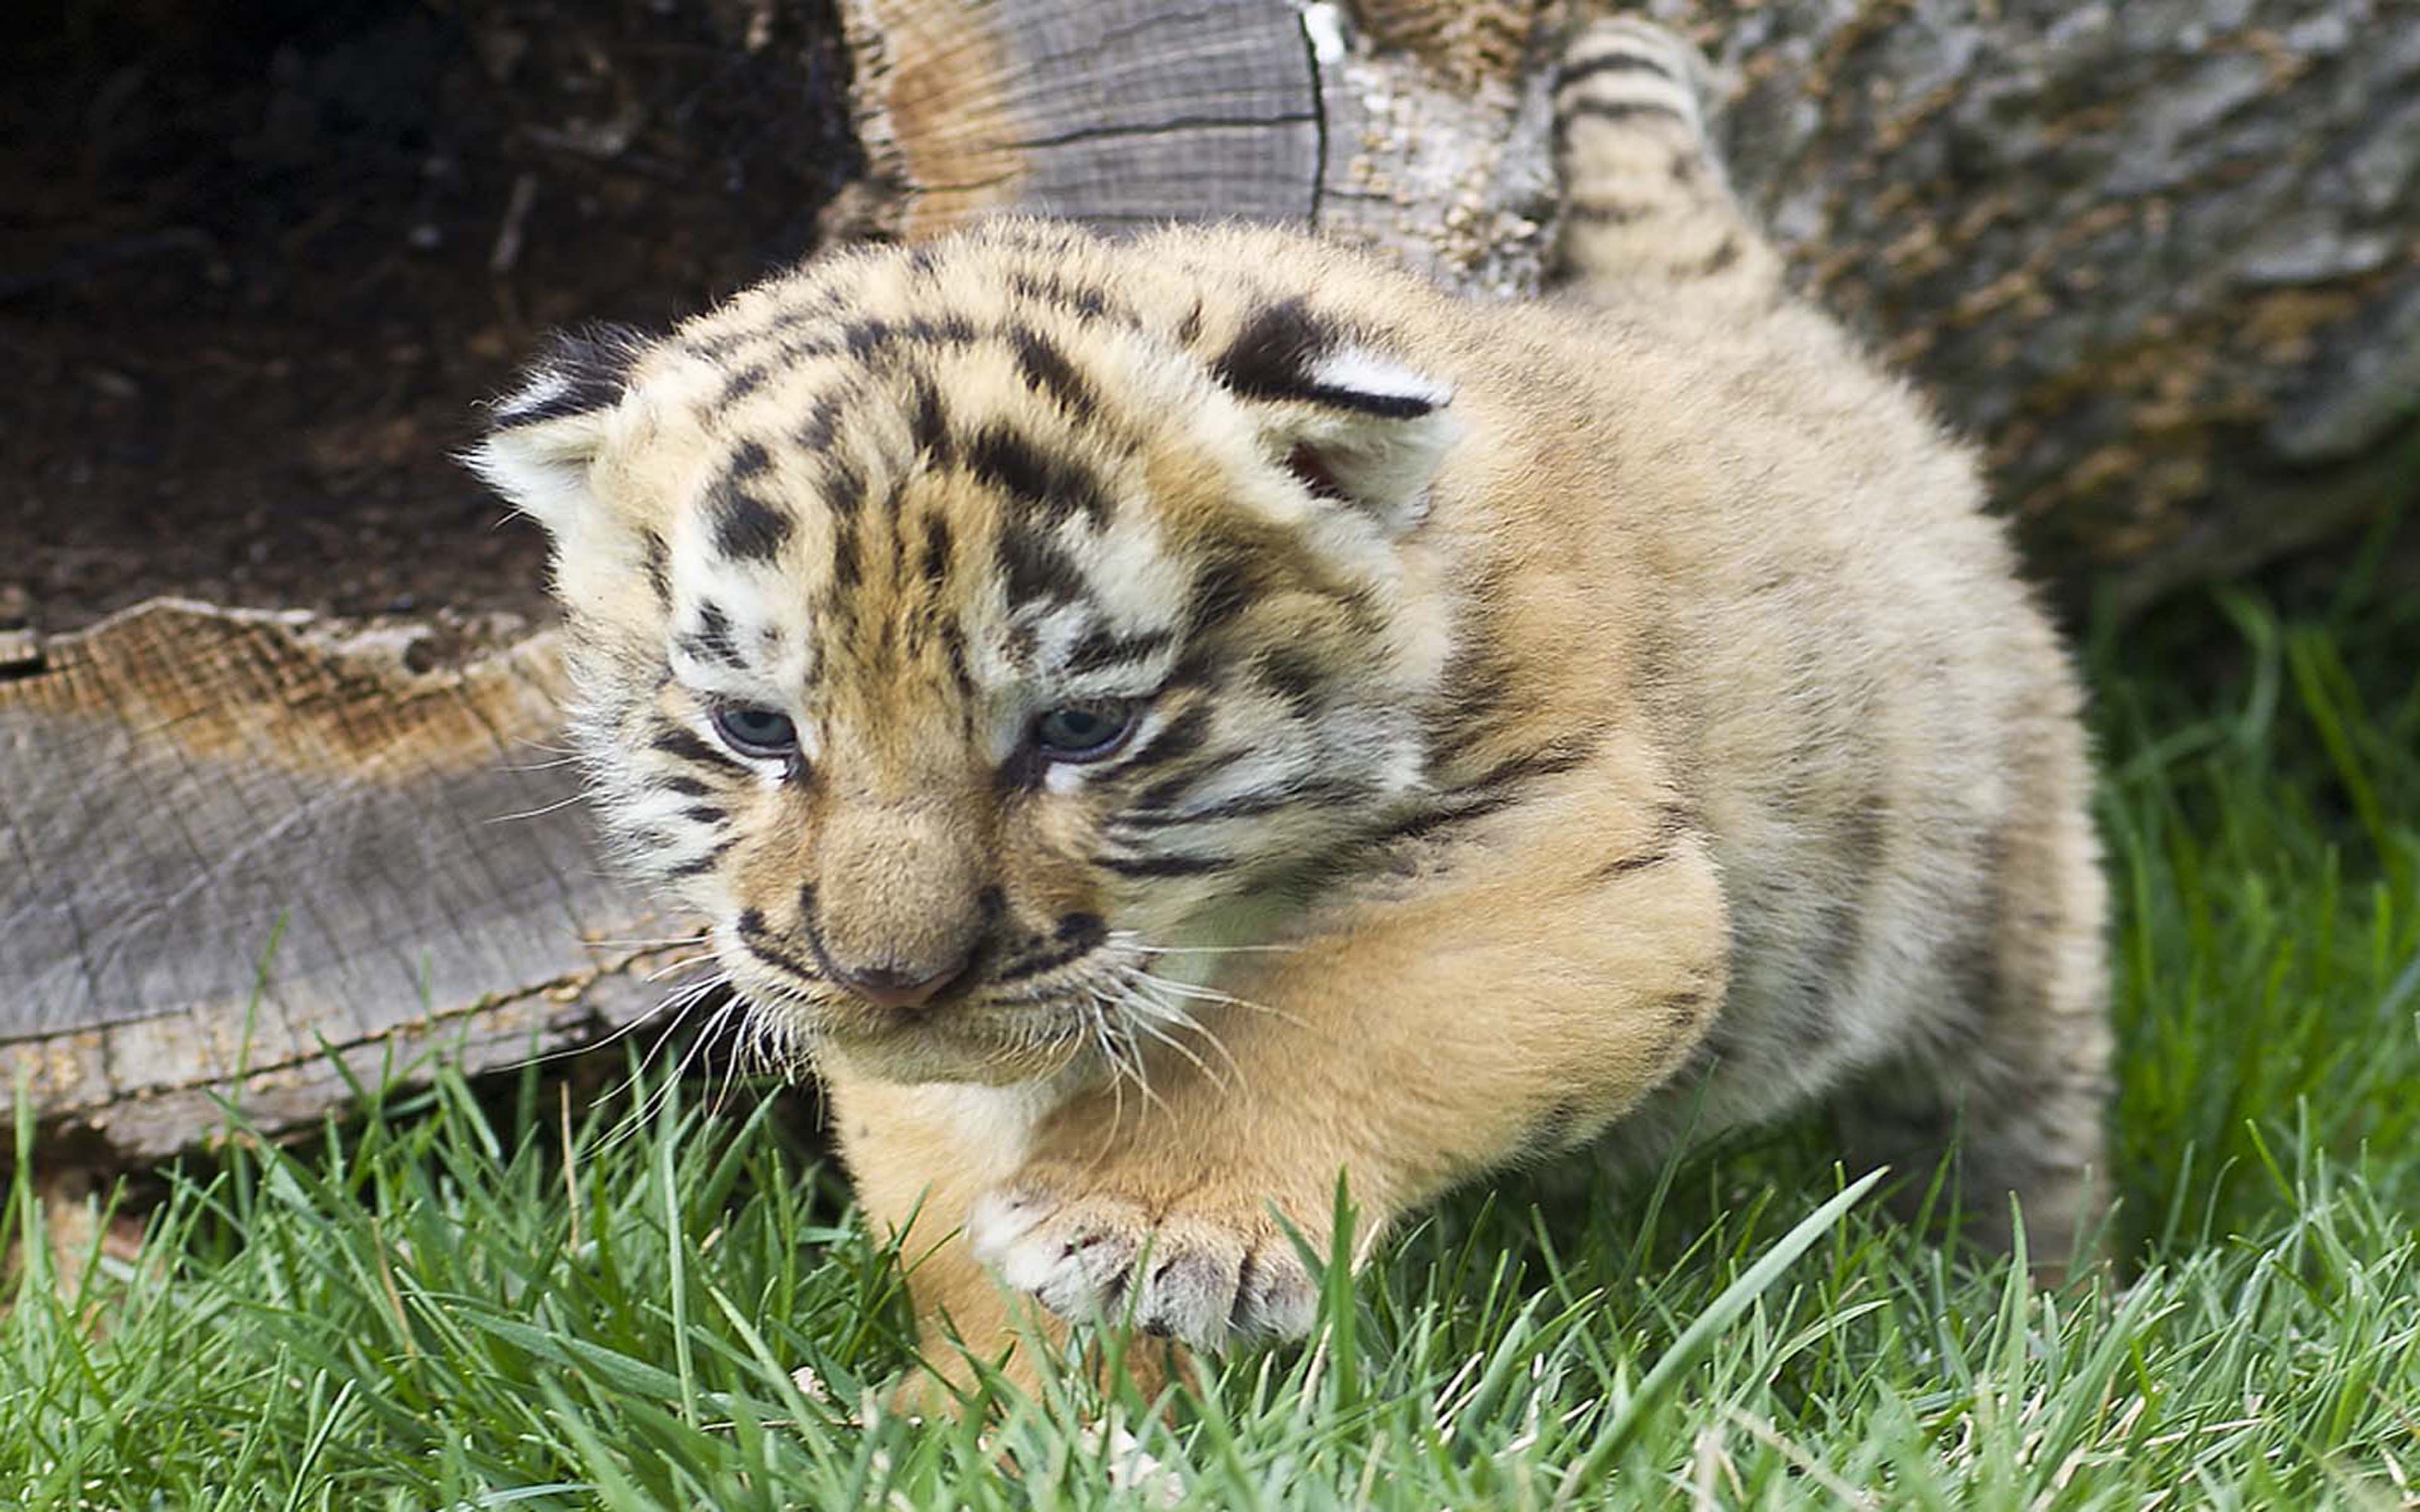 Iages Cute Tiger Cubs Wallpaper HD, Wallpaper13.com